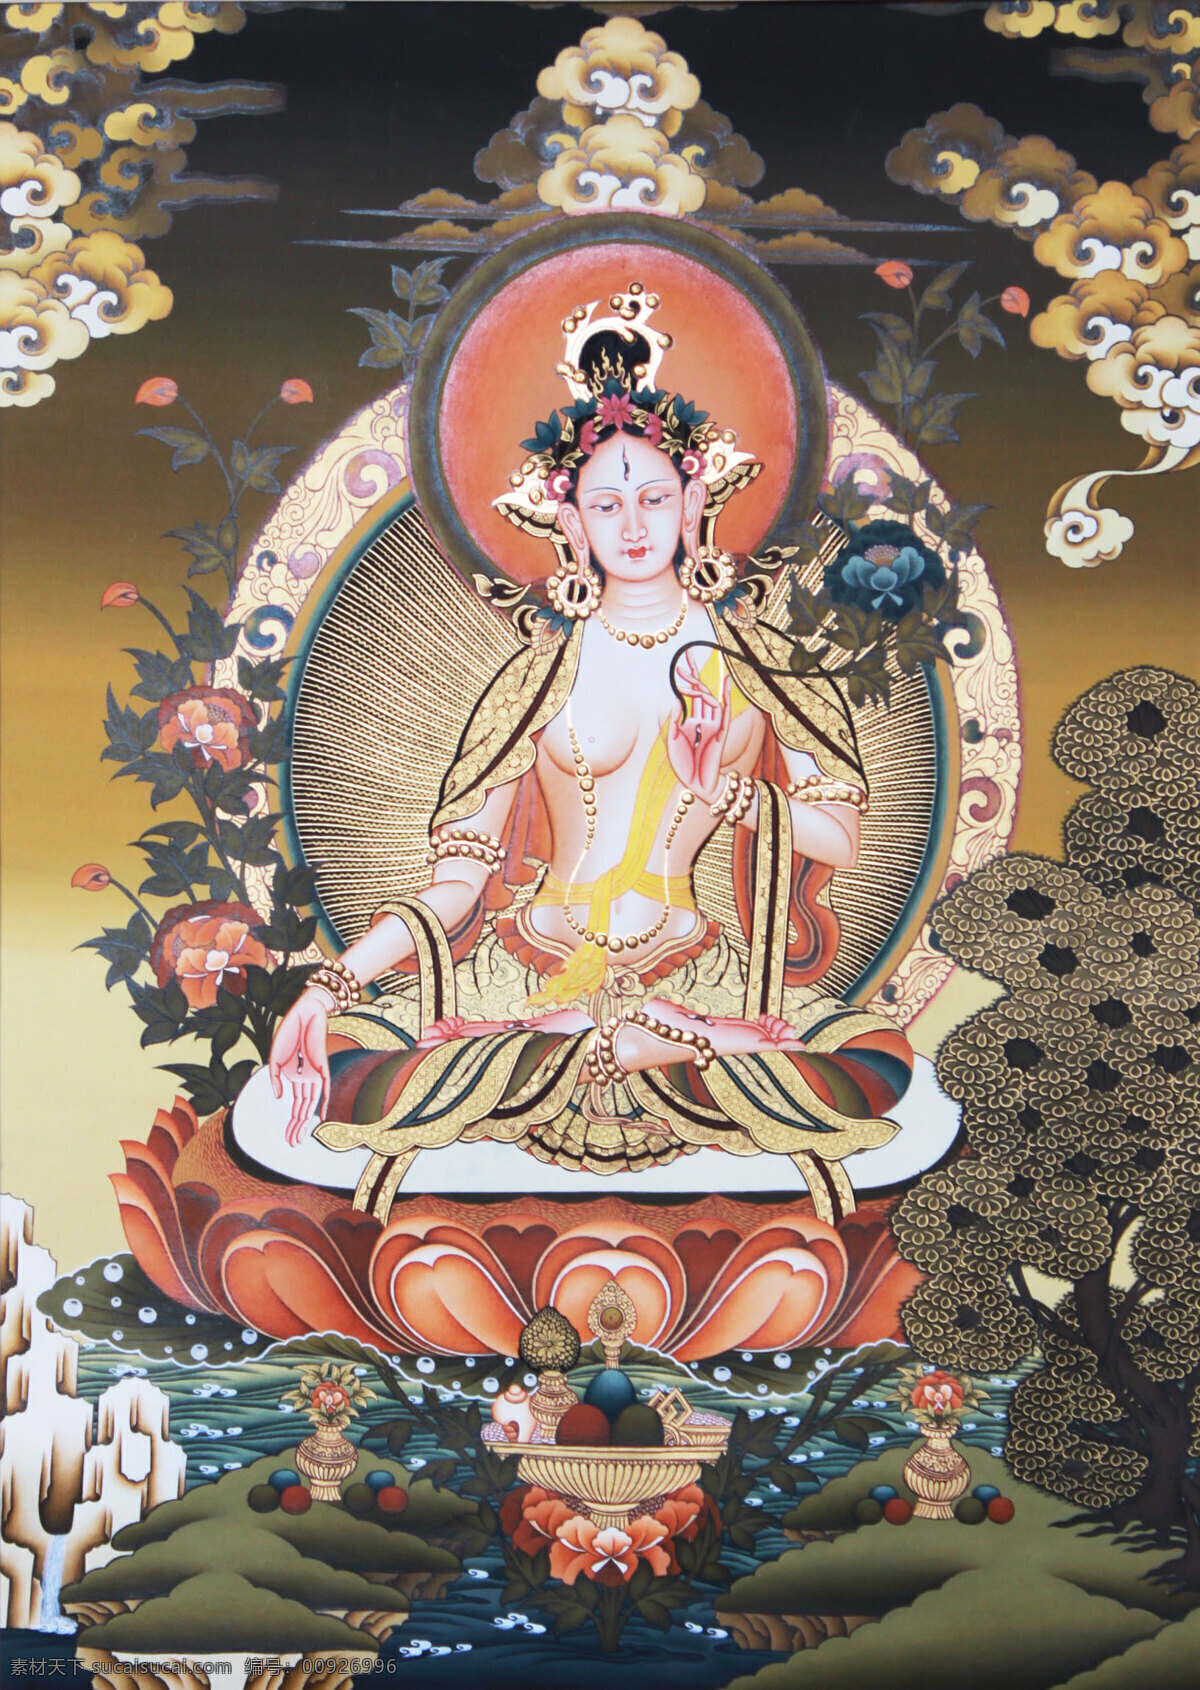 唐卡 艺术 手绘 作品 资料 宗教信仰 文化艺术